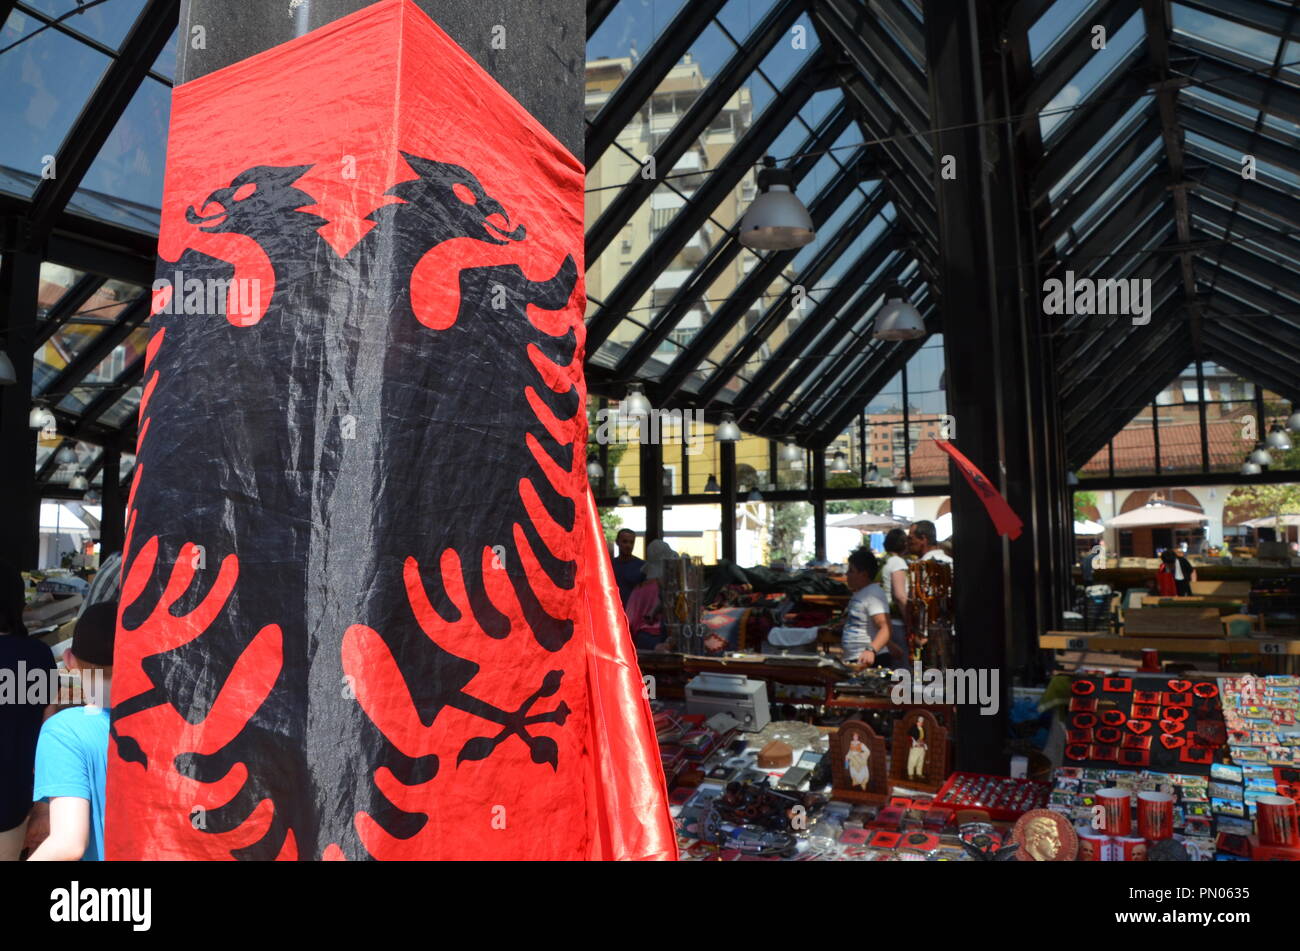 albanian flag at pizarri ri market tirana albania Stock Photo